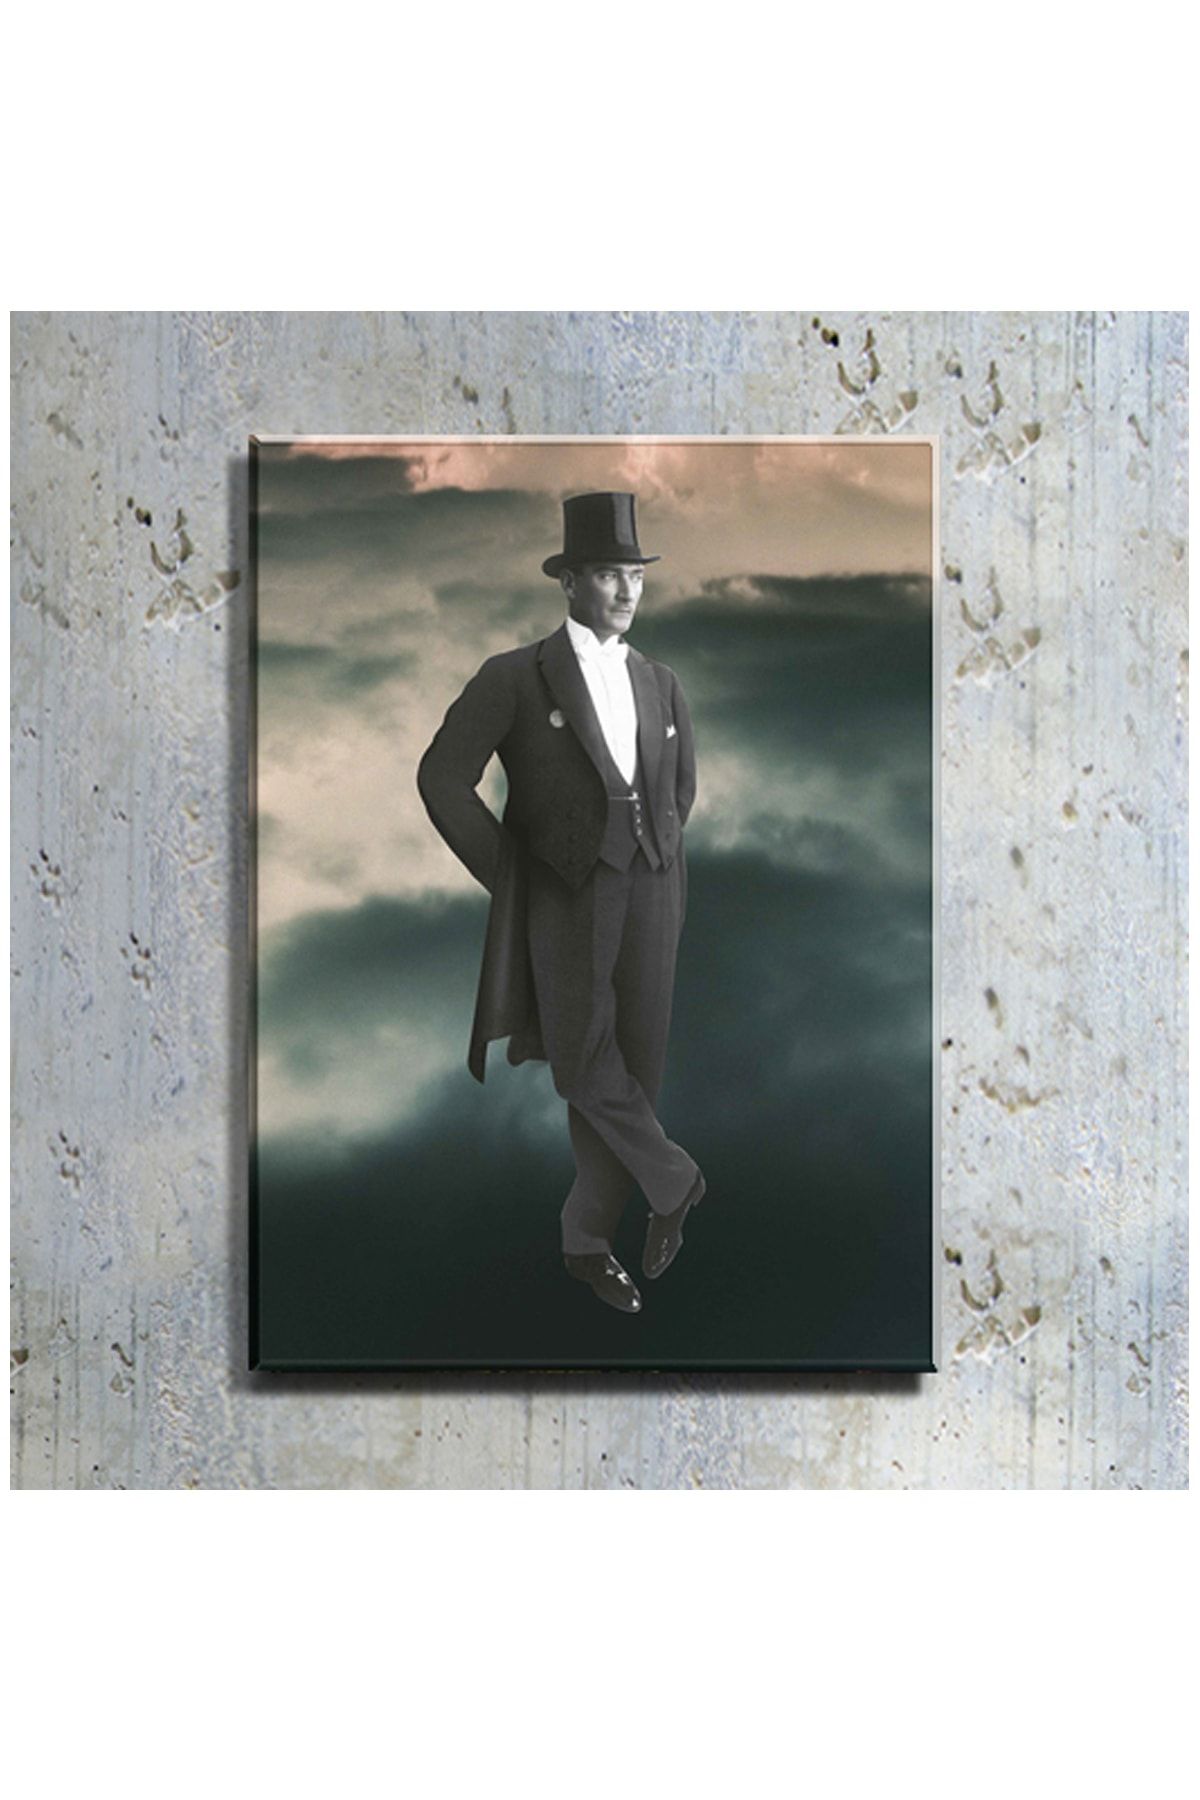 mağazacım Atatürk Frak Giymiş Boy Resmi (80x110 Cm) Kanvas Tablo Tbl1216